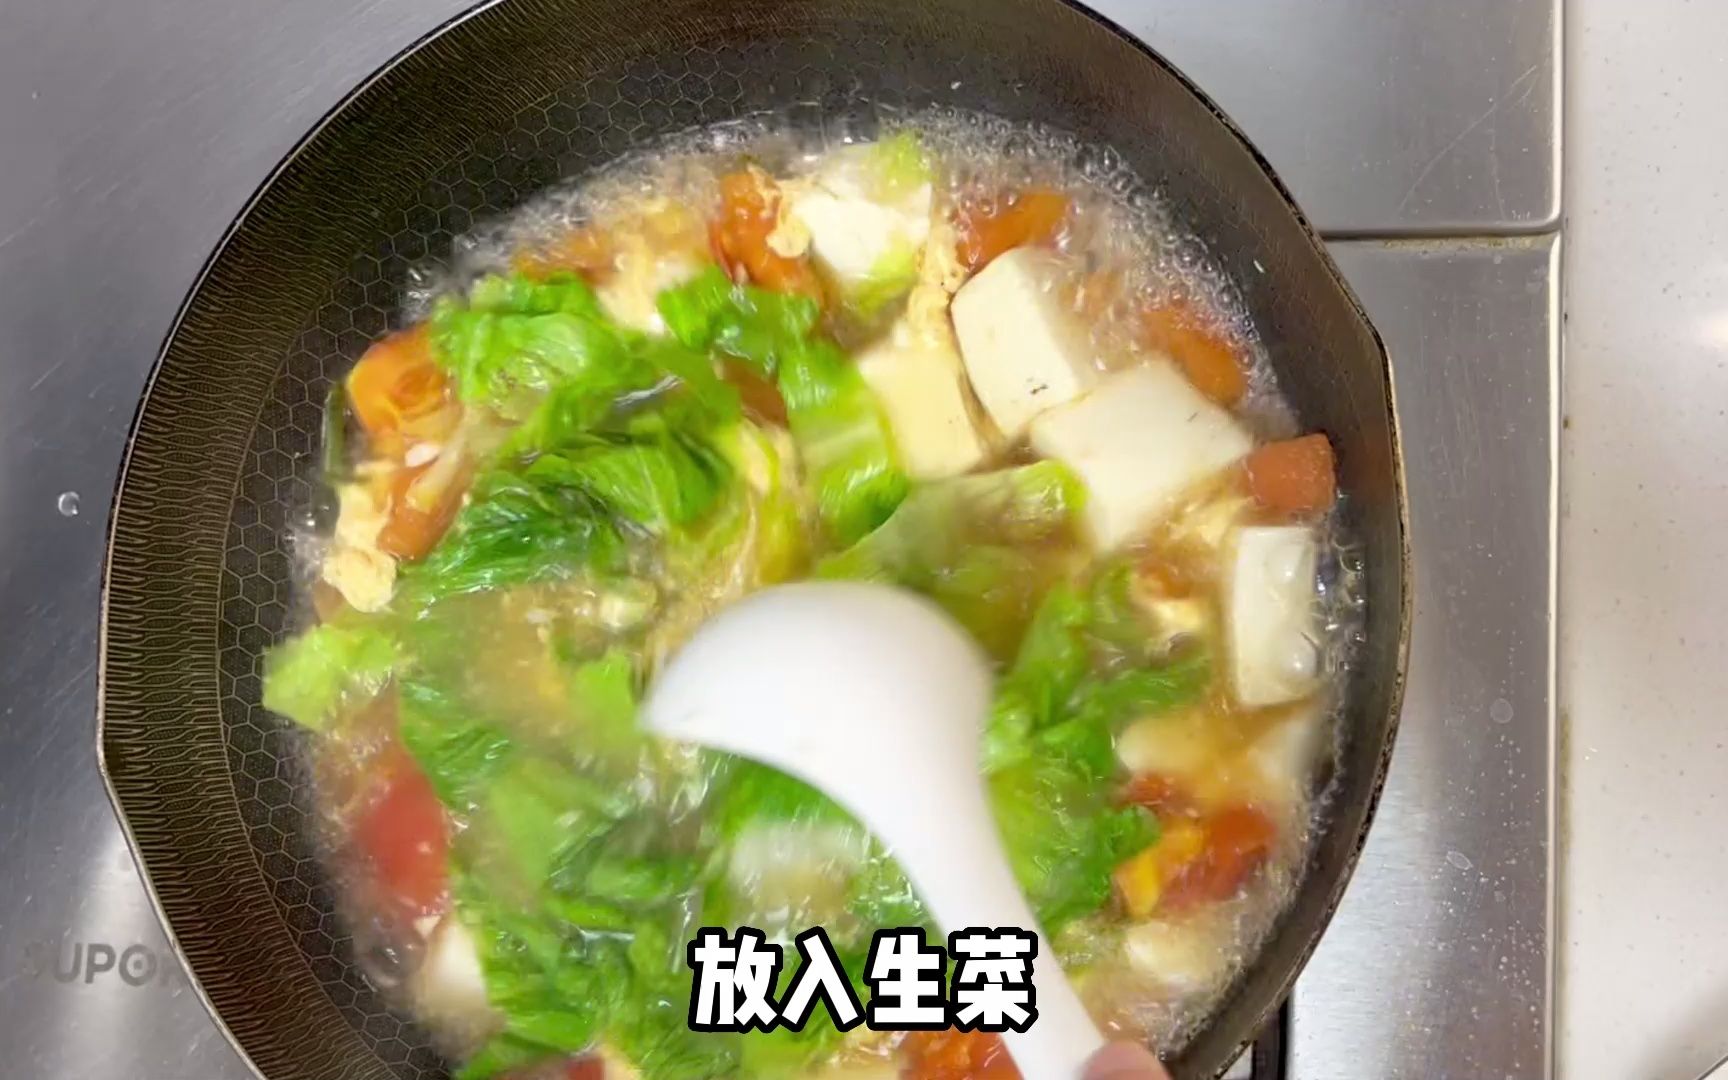 菠菜肉丸丸汤,菠菜肉丸丸汤的家常做法 - 美食杰菠菜肉丸丸汤做法大全